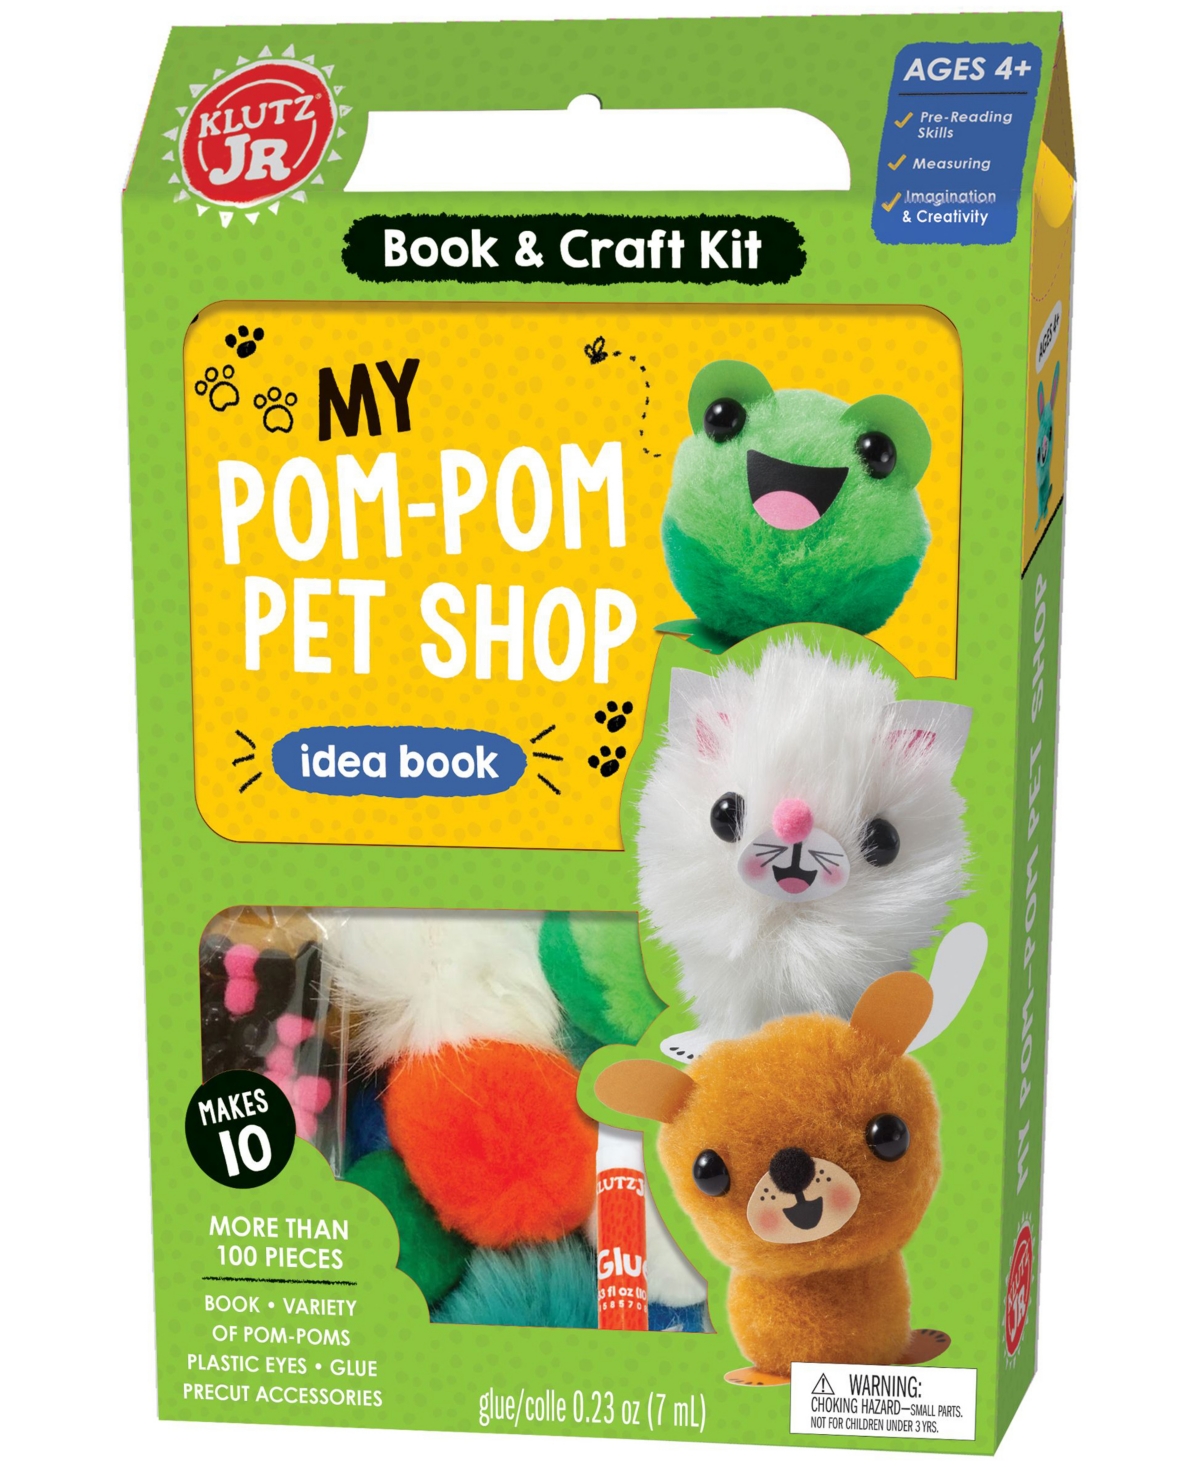 Jr. My Pom-Pom Pet Shop